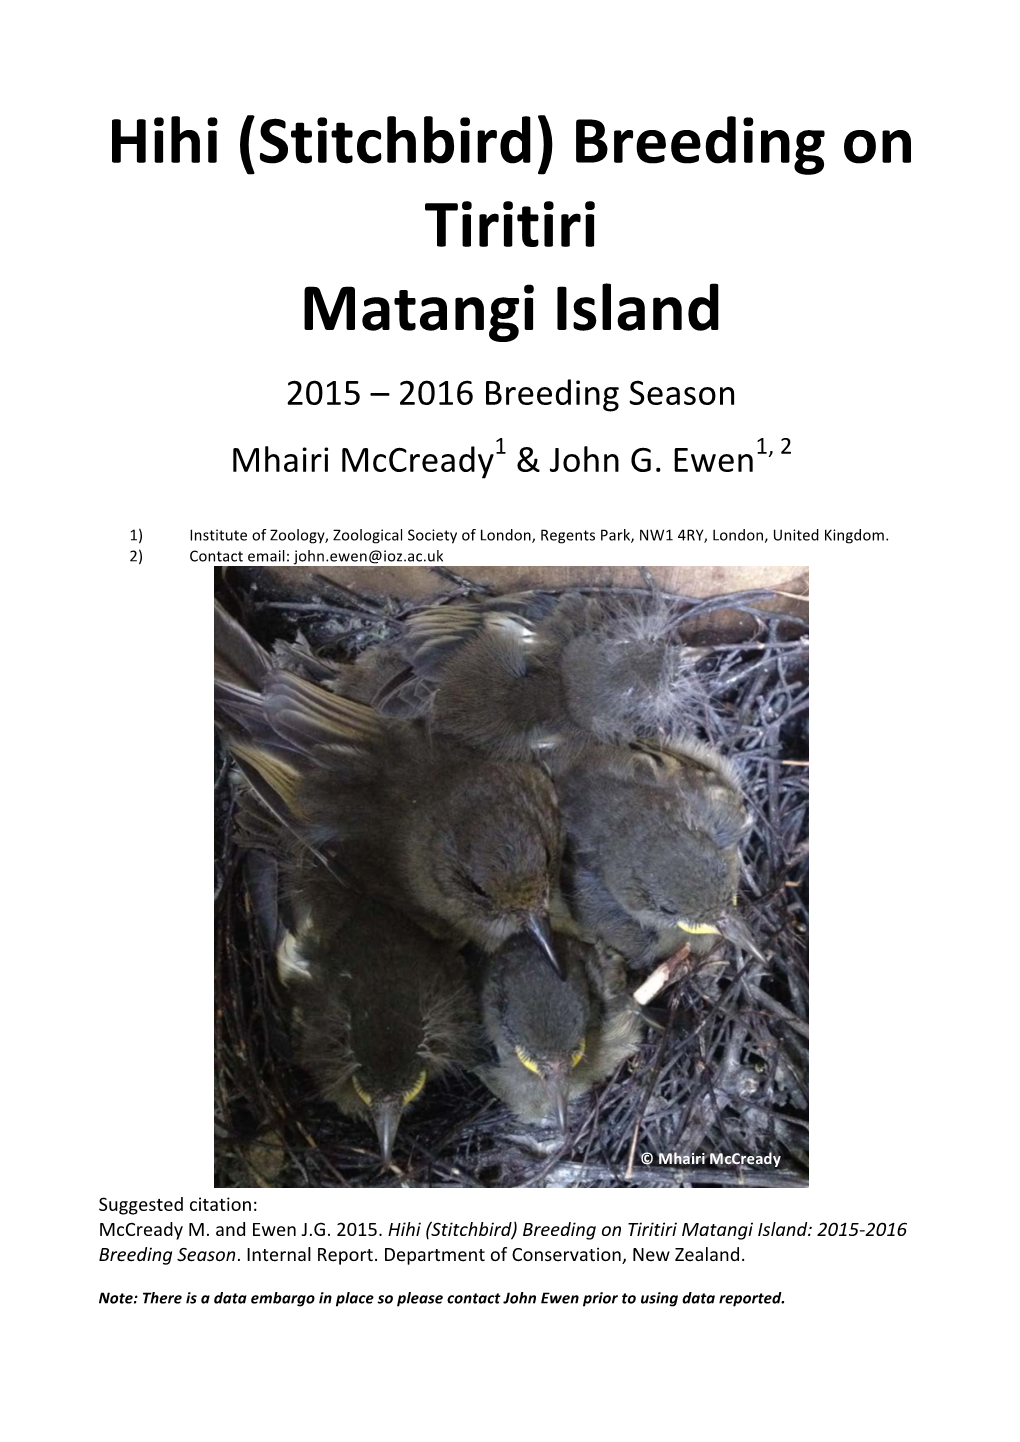 Hihi (Stitchbird) Breeding on Tiritiri Matangi Island: 2015-2016 Breeding Season